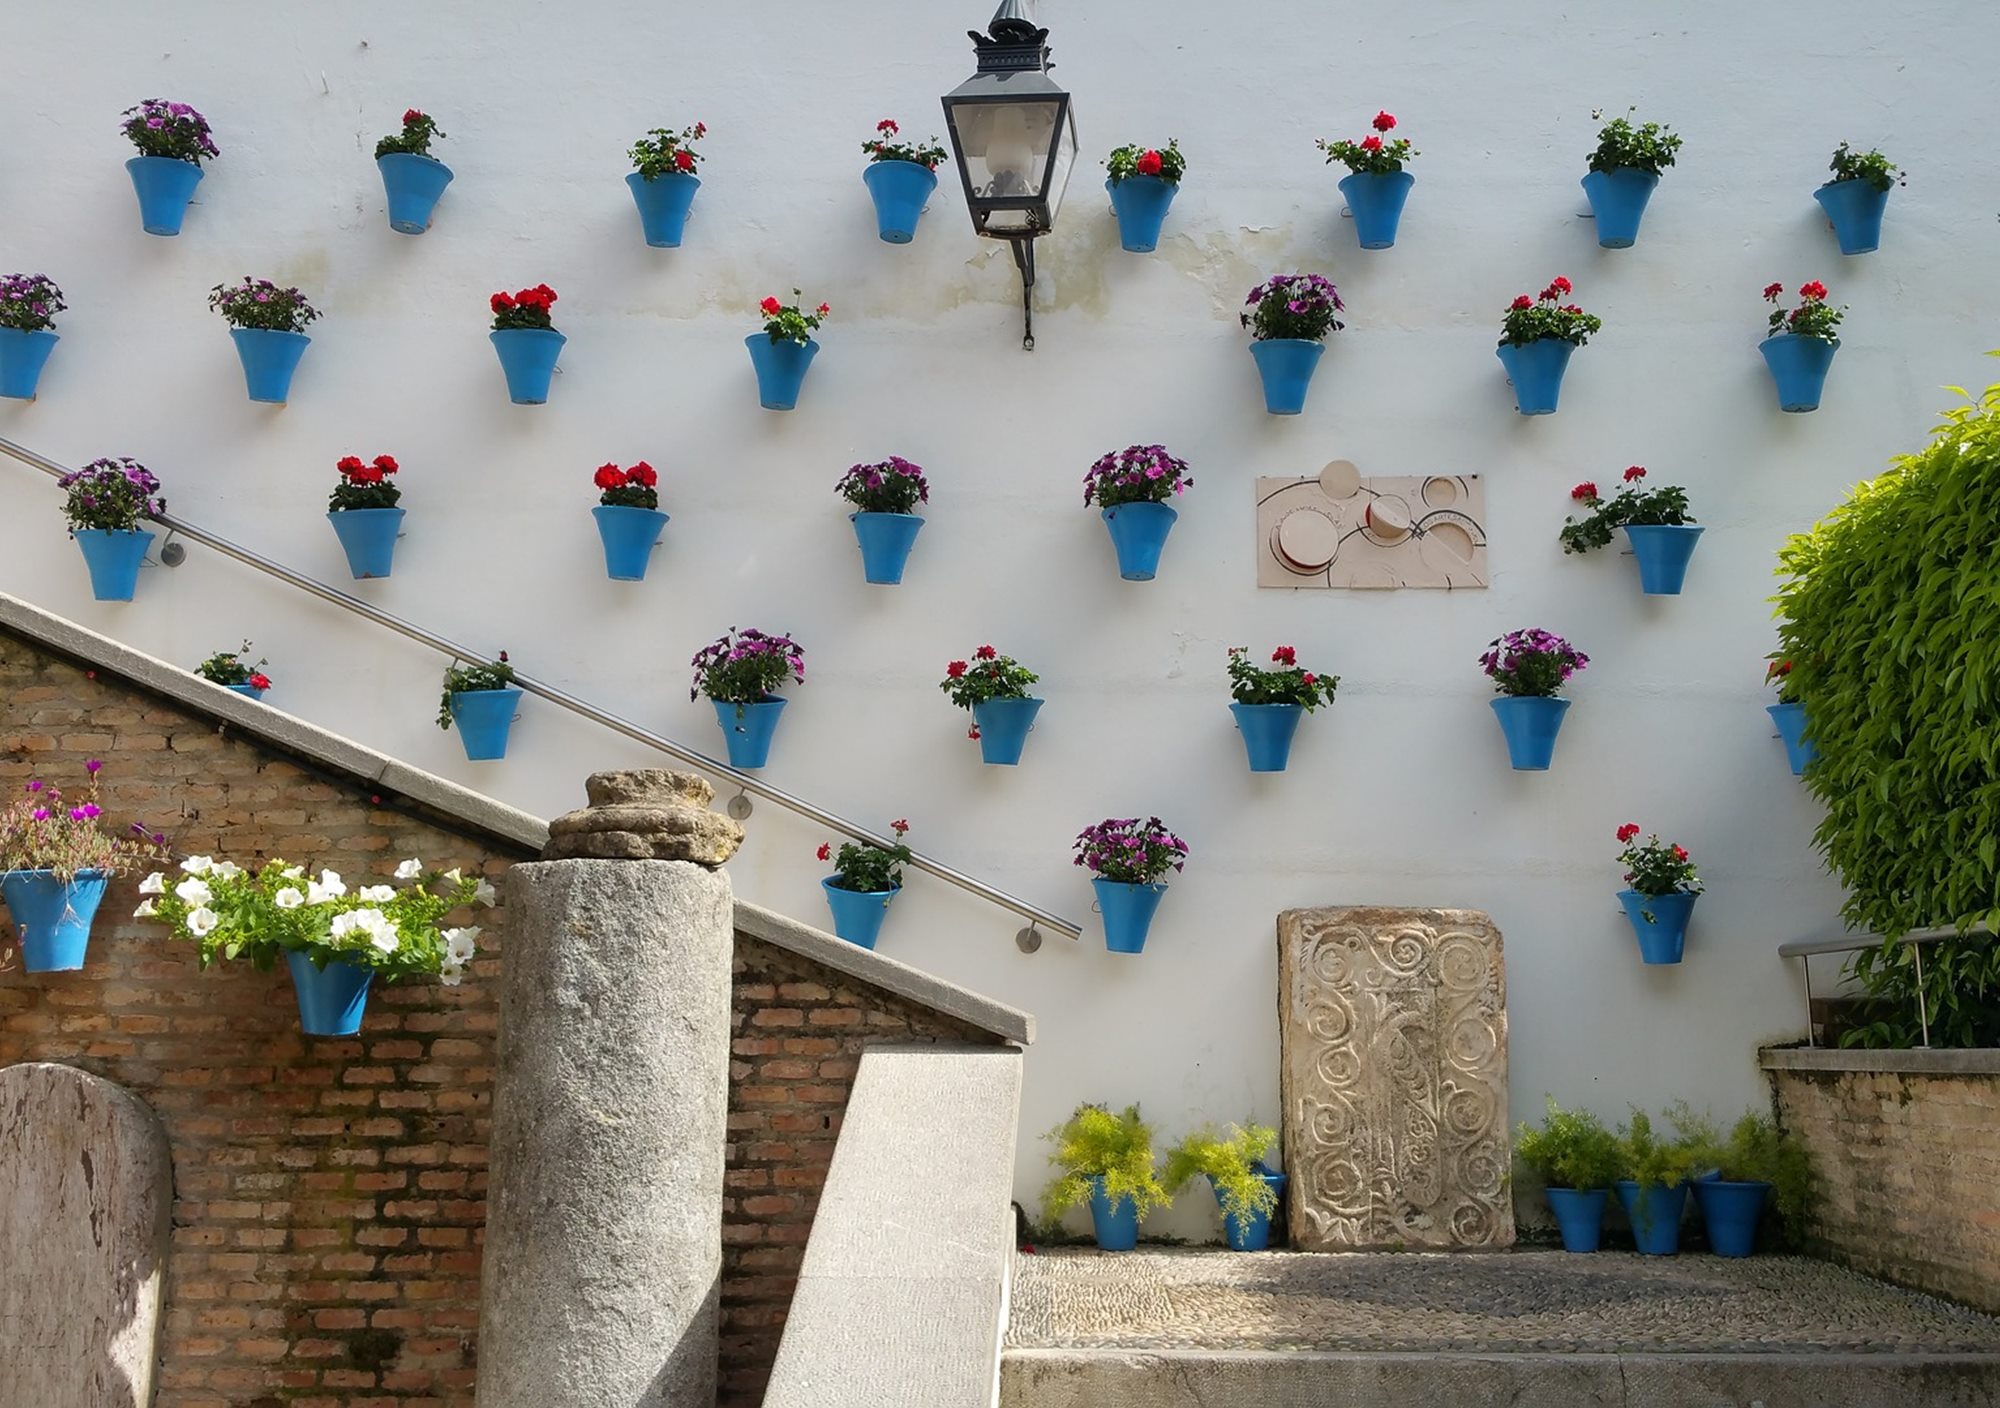 Visitar la Judería de Córdoba, visitas guiadas a la Judería de Córdoba, tours guiados a la Judería de Córdoba, excursión con guía por la Judería de Córdoba